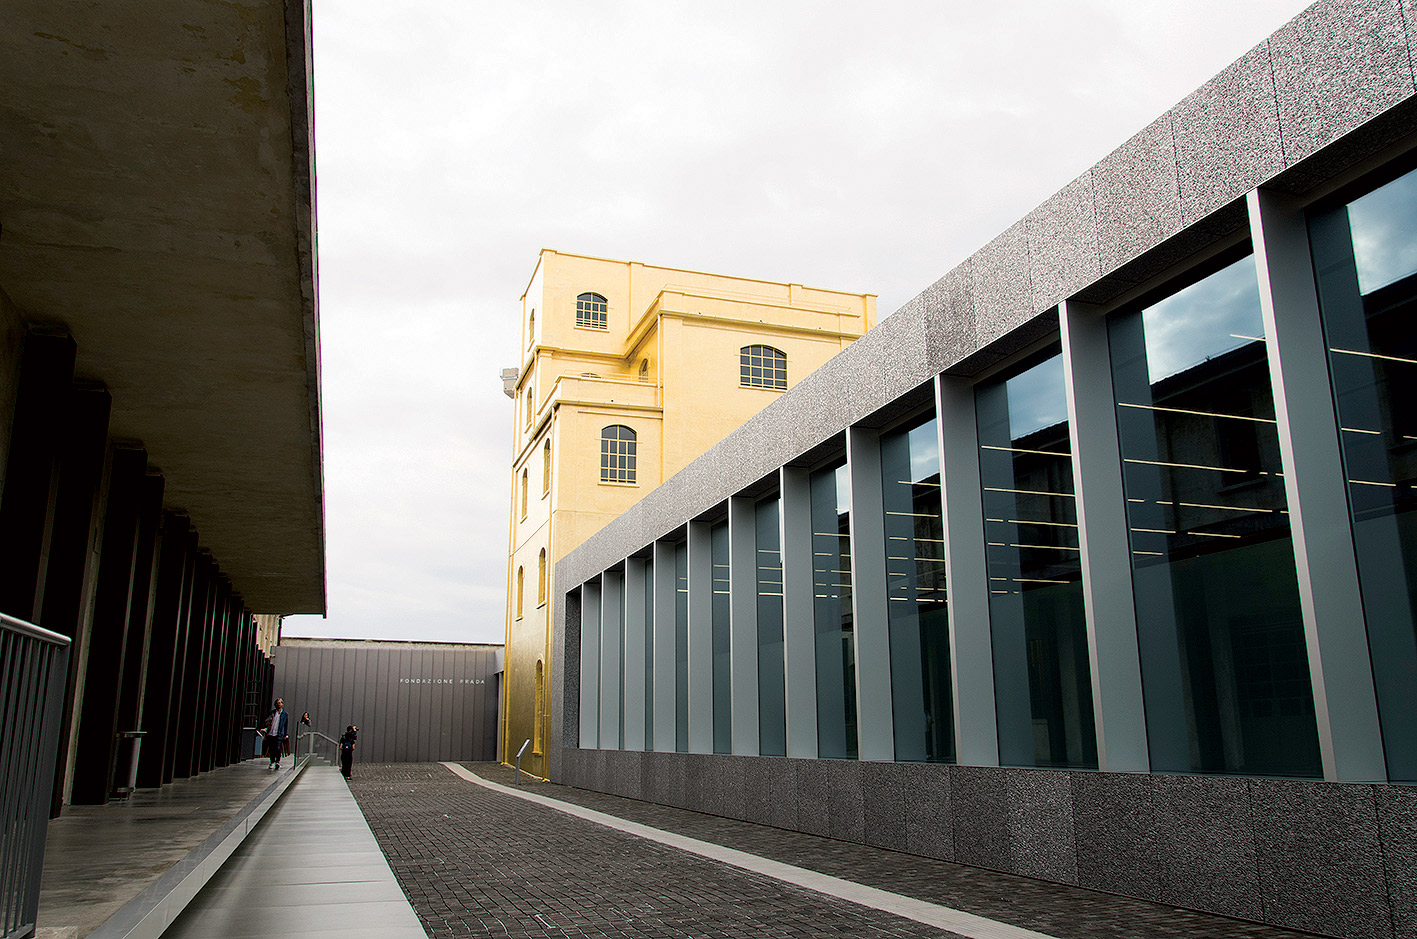 Rem Koolhaas premieňa a dostavuje areál liehovaru z roku 1910 na kultúrno-umeleckú inštitúciu Fondazione Prada.